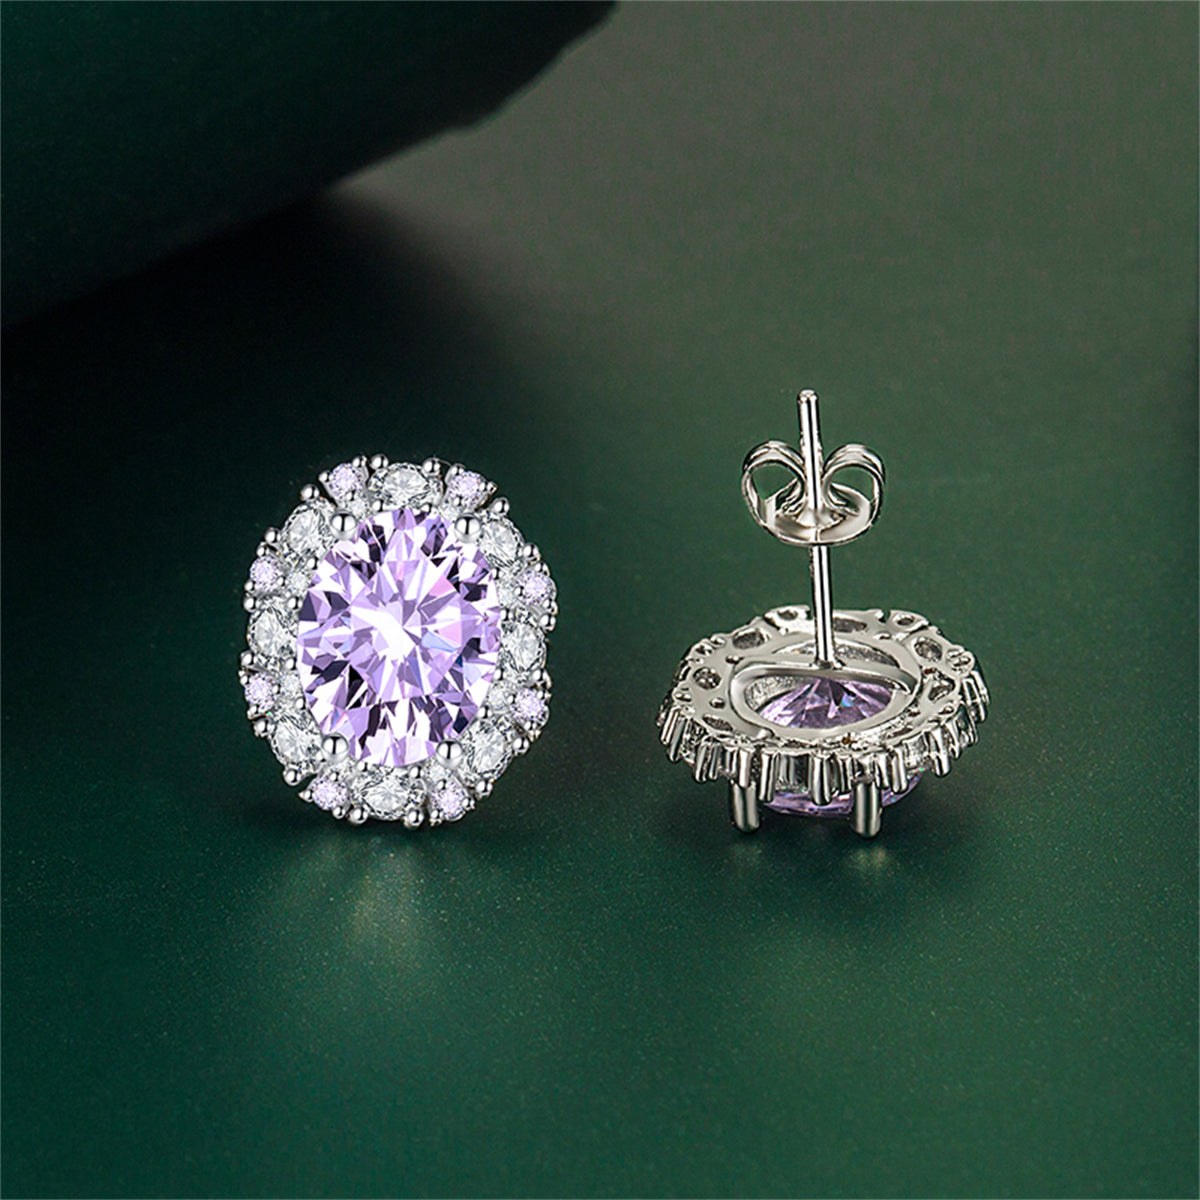 Cubic Zirconia & Purple Crystal Oval Stud Earrings